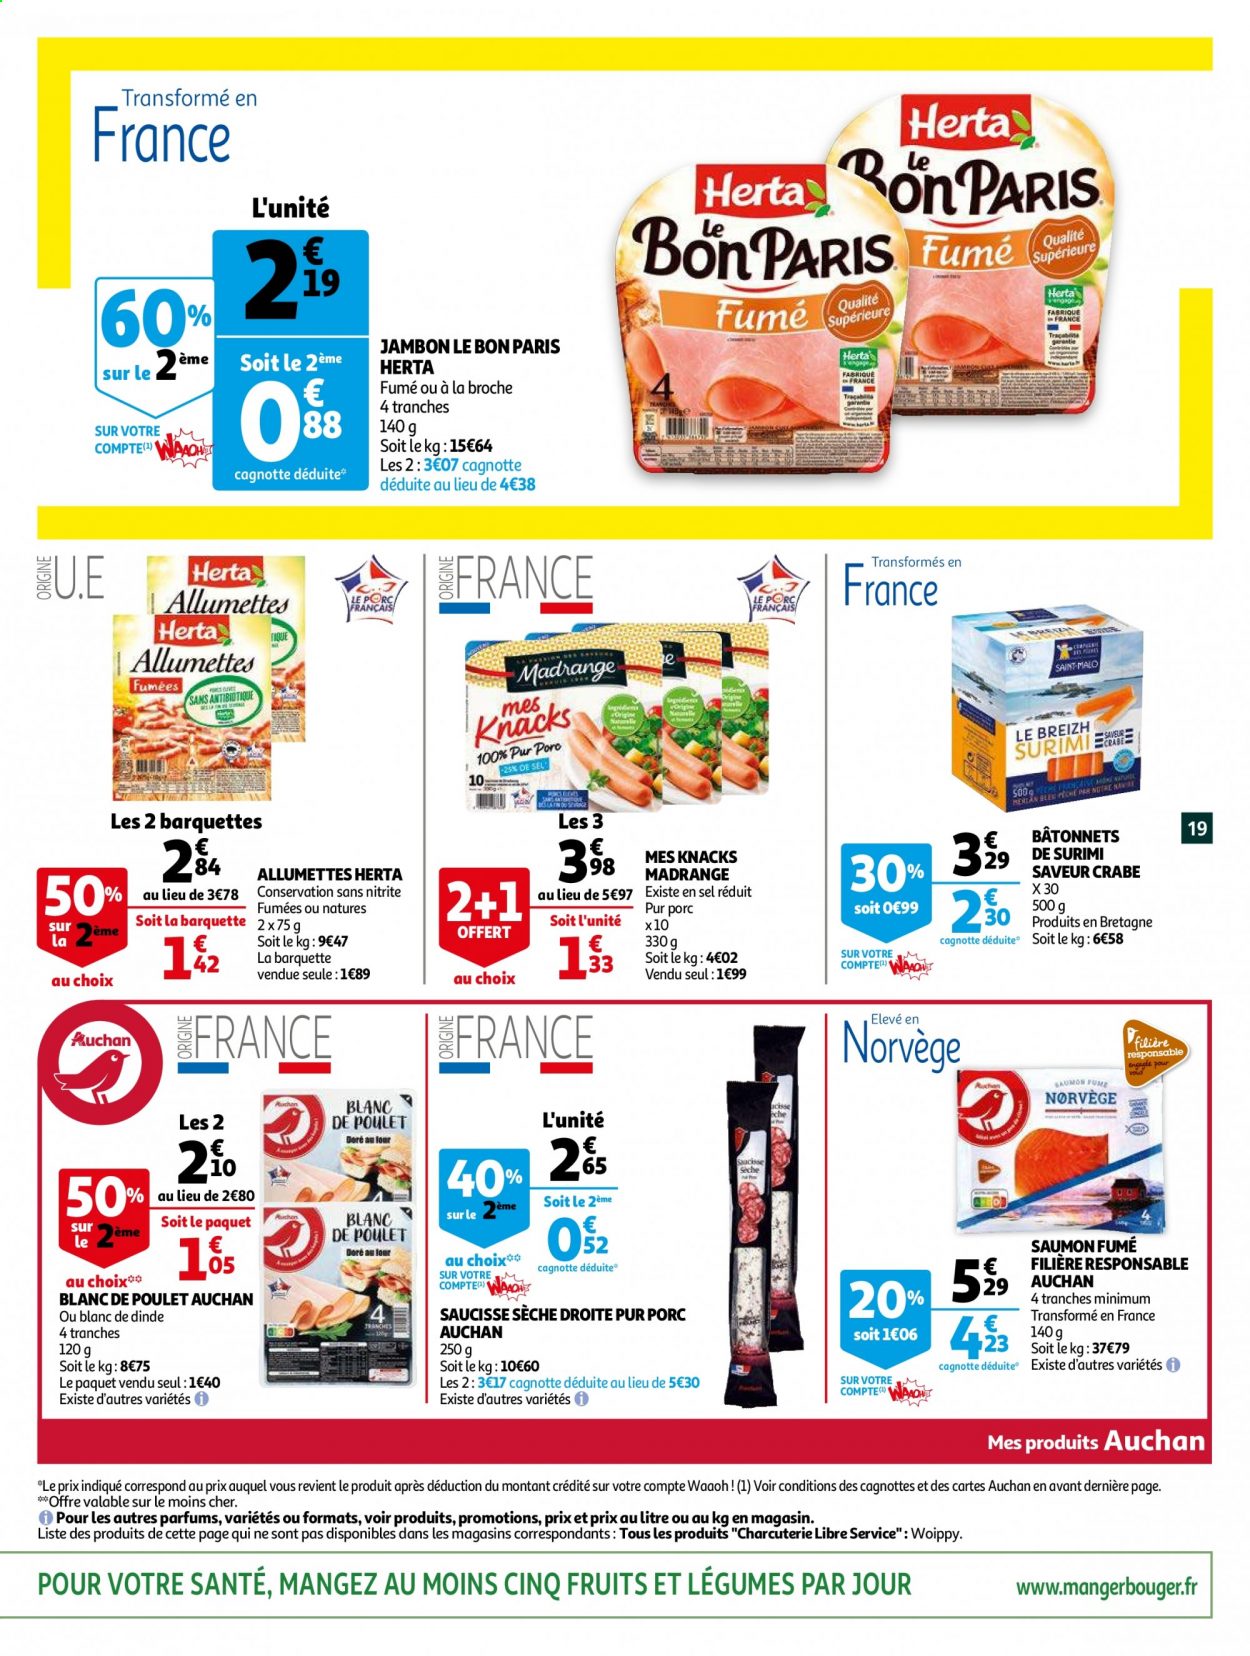 thumbnail - Catalogue Auchan - 06/04/2021 - 13/04/2021 - Produits soldés - saumon, surimi, bâtonnets de surimi, allumettes, Herta, jambon, blanc de poulet, saucisse sèche, saucisse, Knacks, saumon fumé. Page 19.